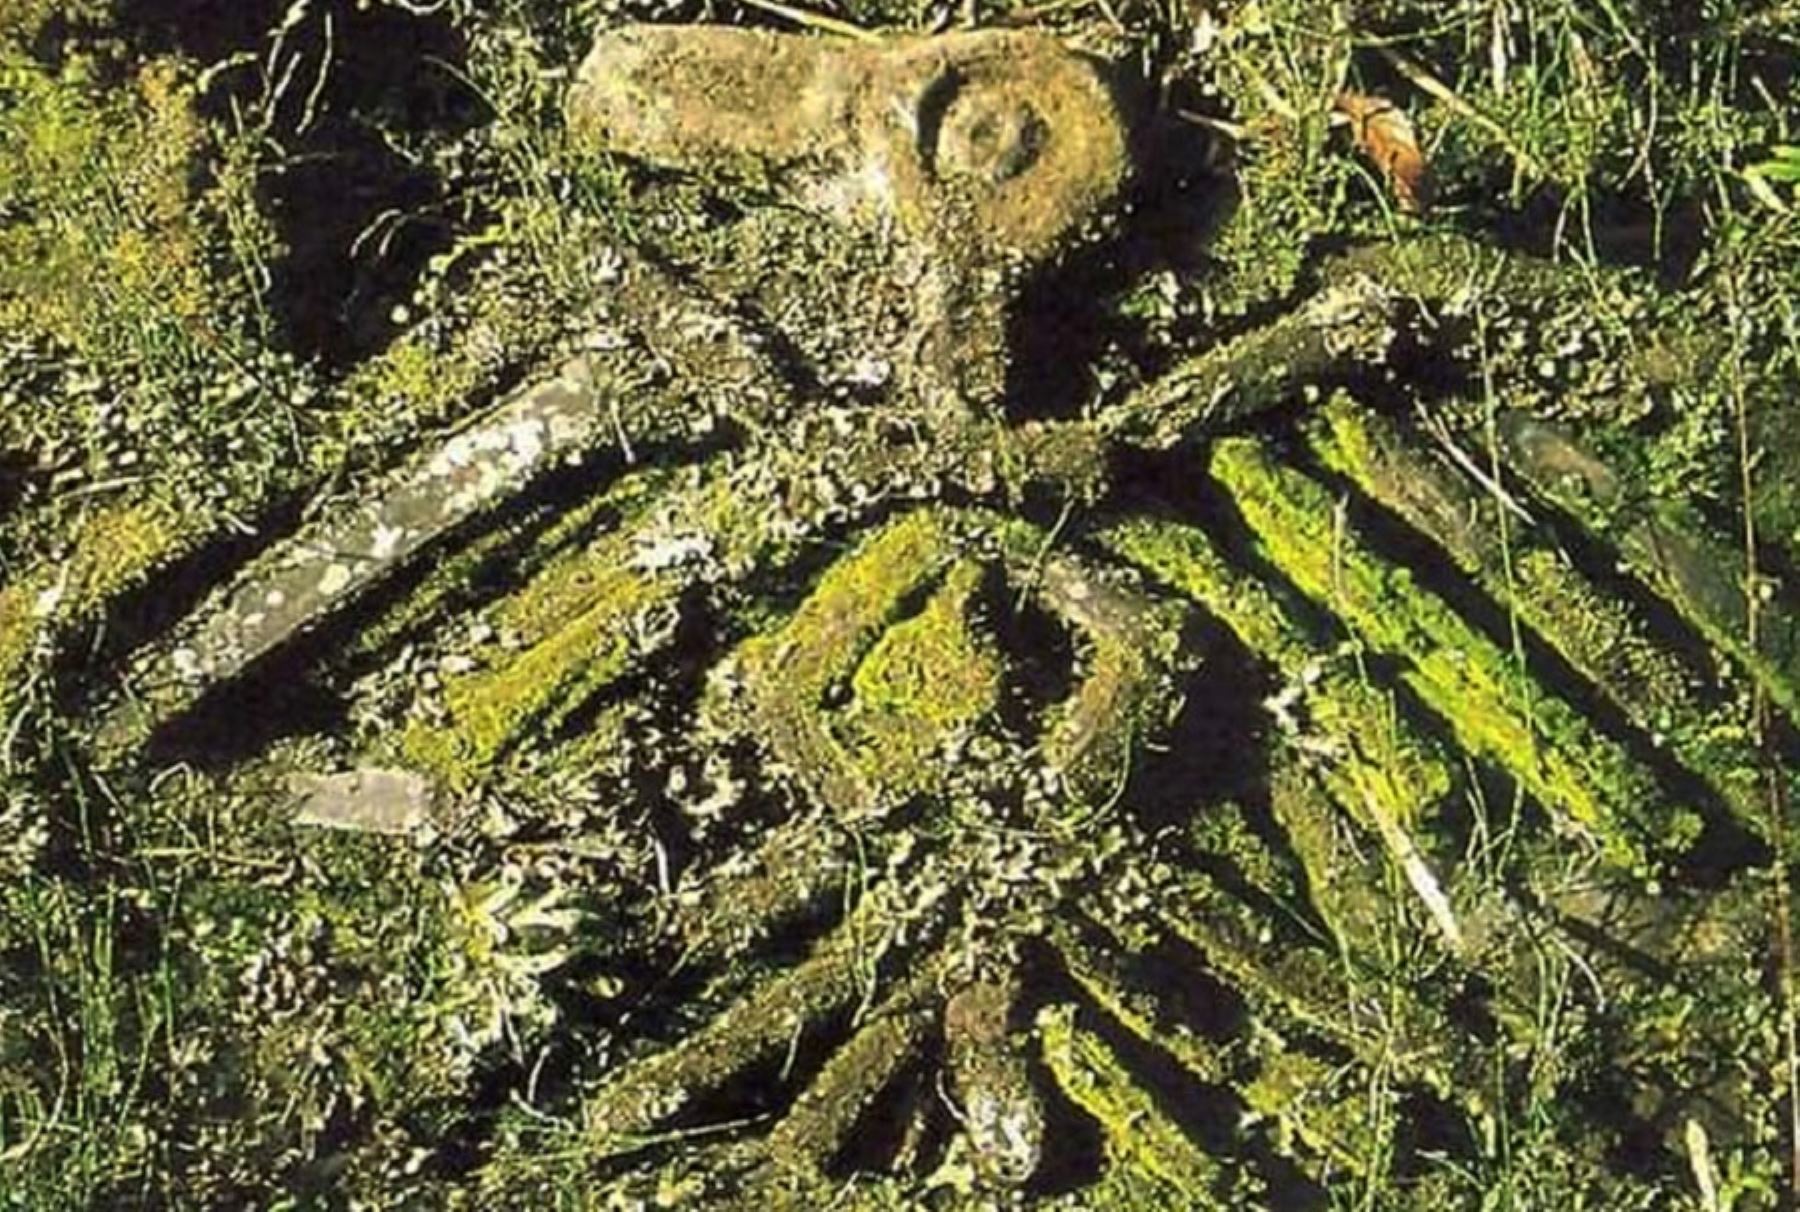 En los bosques húmedos y nubosos del Parque Nacional Río Abiseo, en la región San Martín, está uno de los más enigmáticos e impresionantes complejos arqueológicos descubiertos en la ceja de selva peruana: el Gran Pajatén, llamada también la “Ciudad perdida de los chachapoya”.